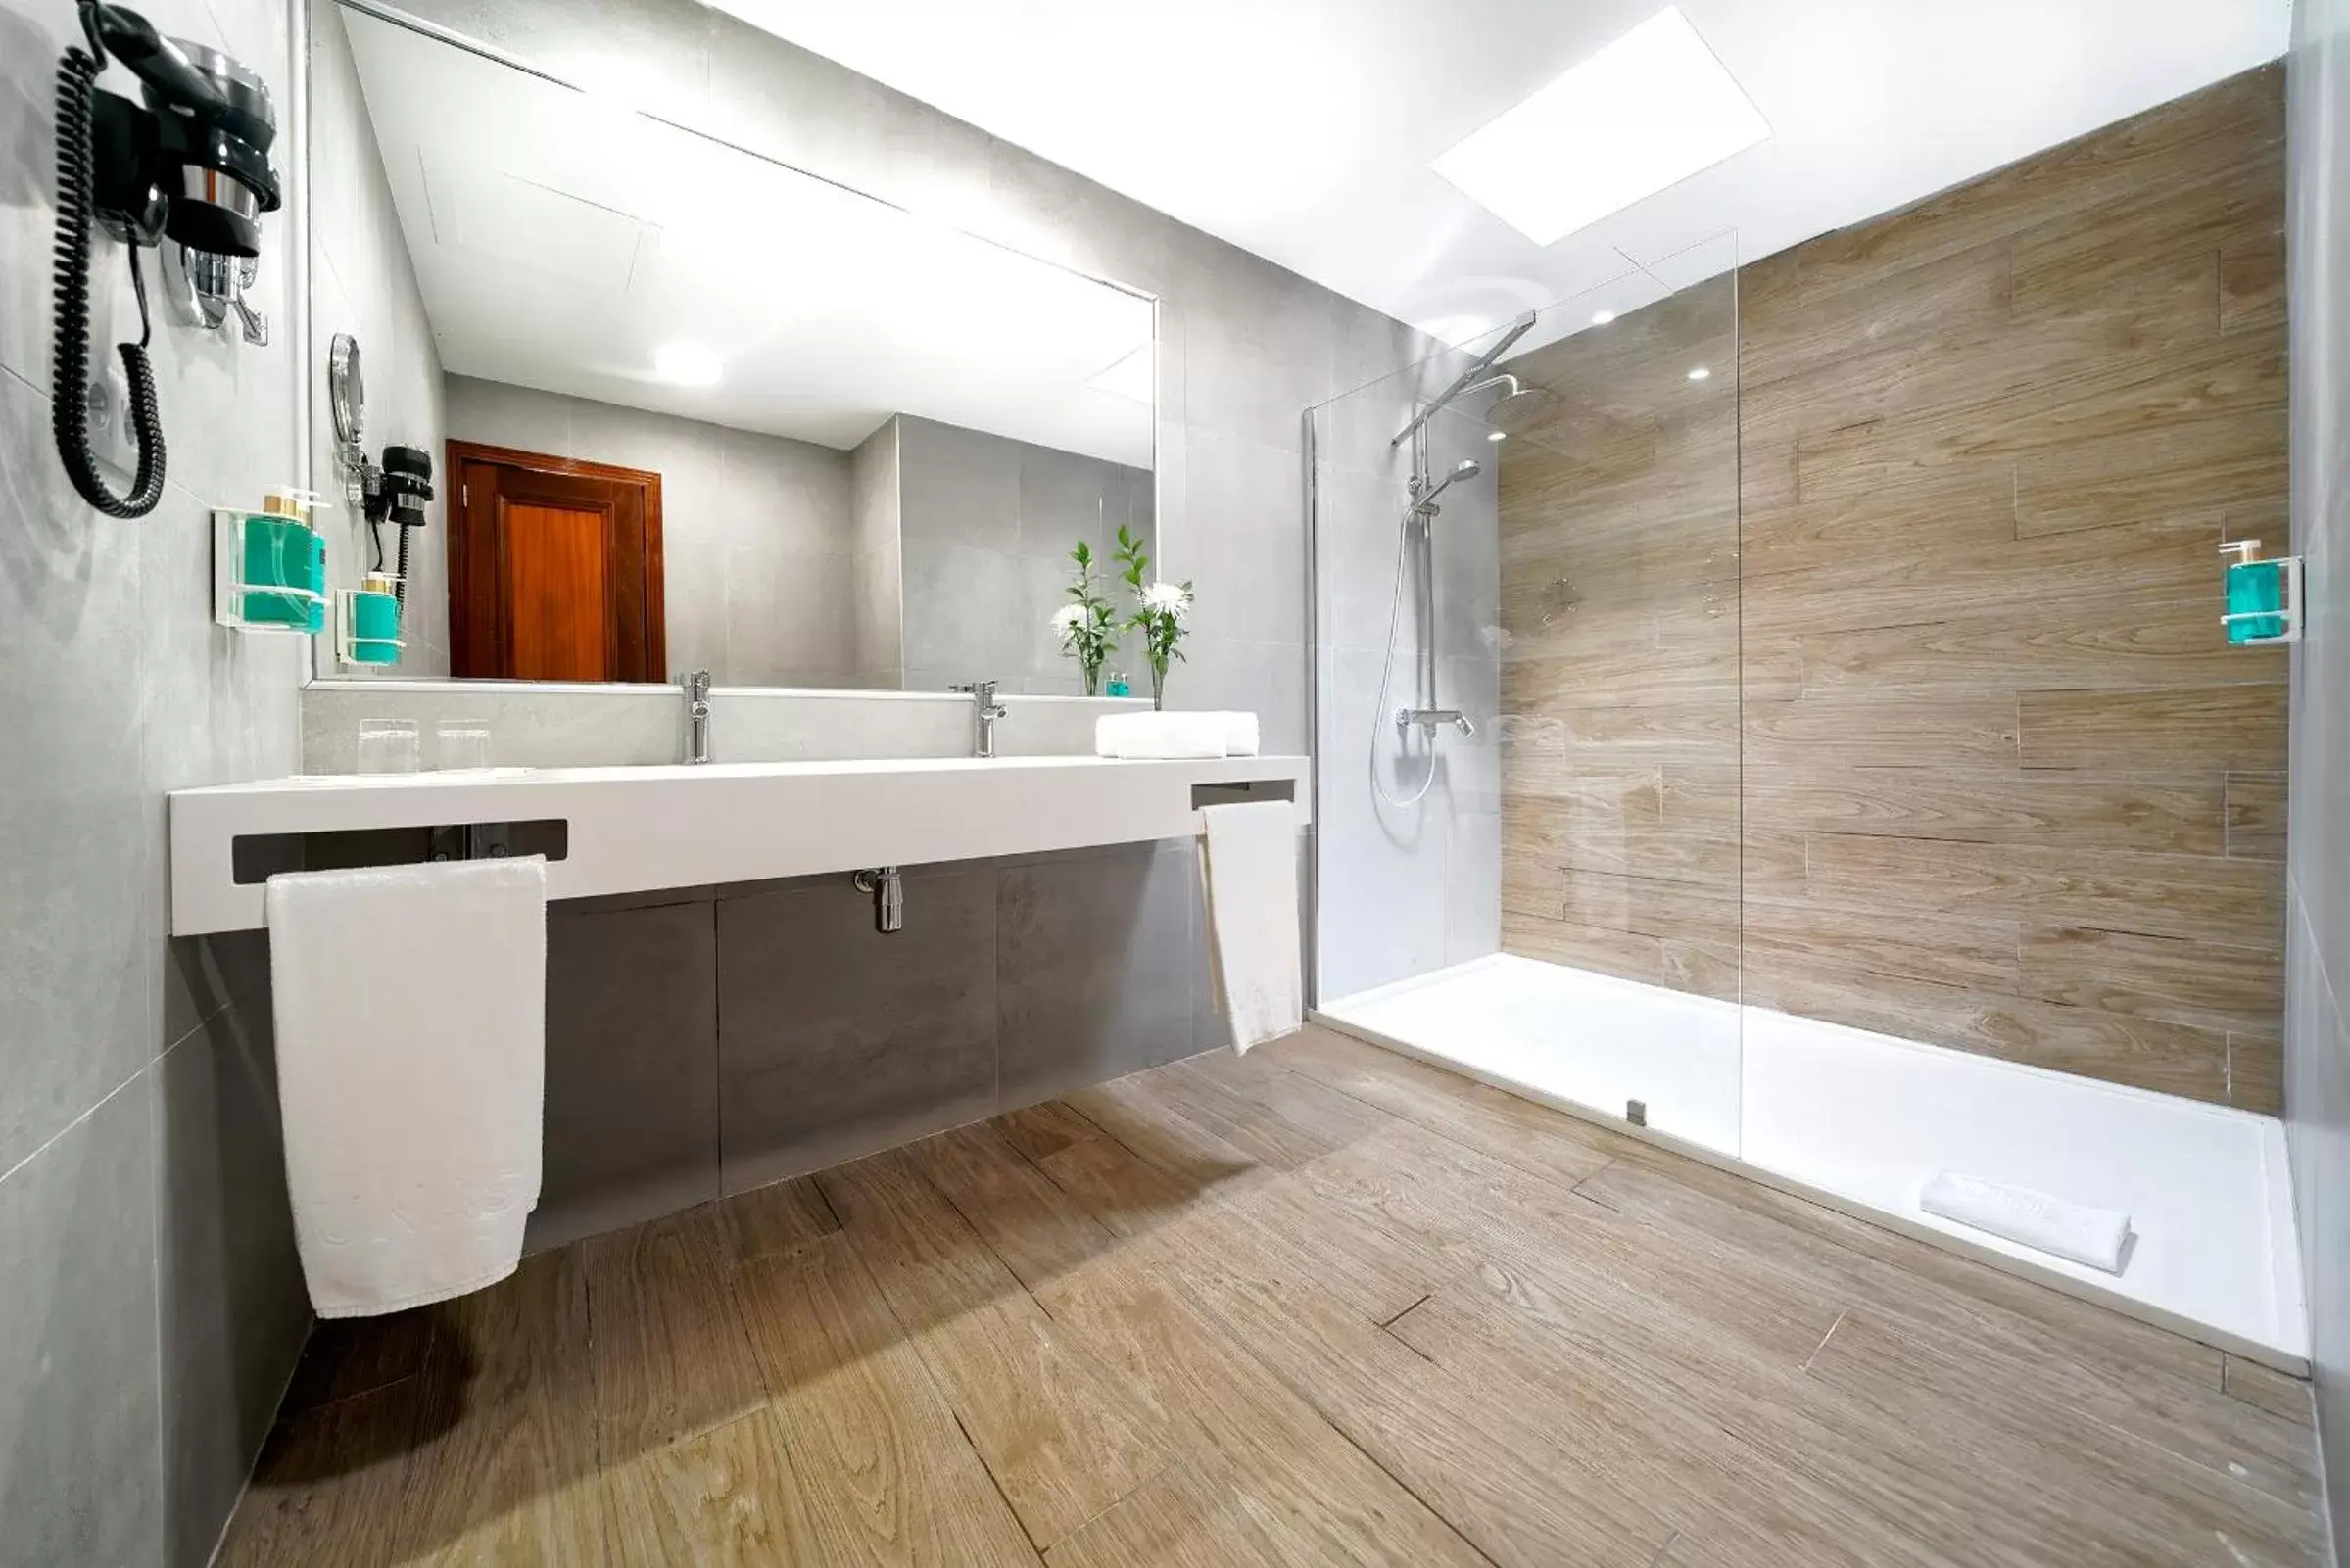 Shower, Bathroom in Suites & Villas by Dunas